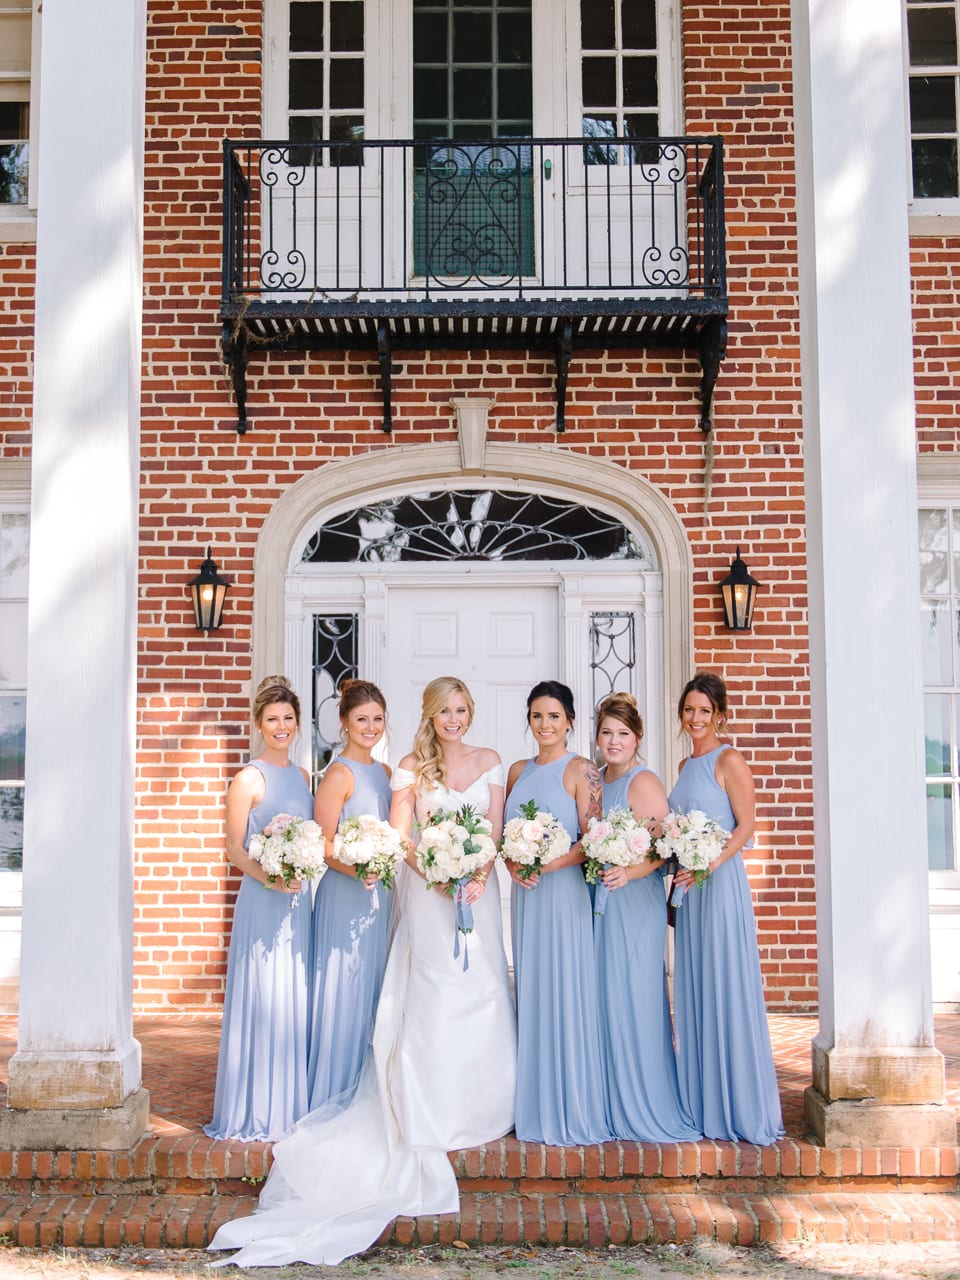 Hobcaw Barony - South Carolina Wedding Venue Photos